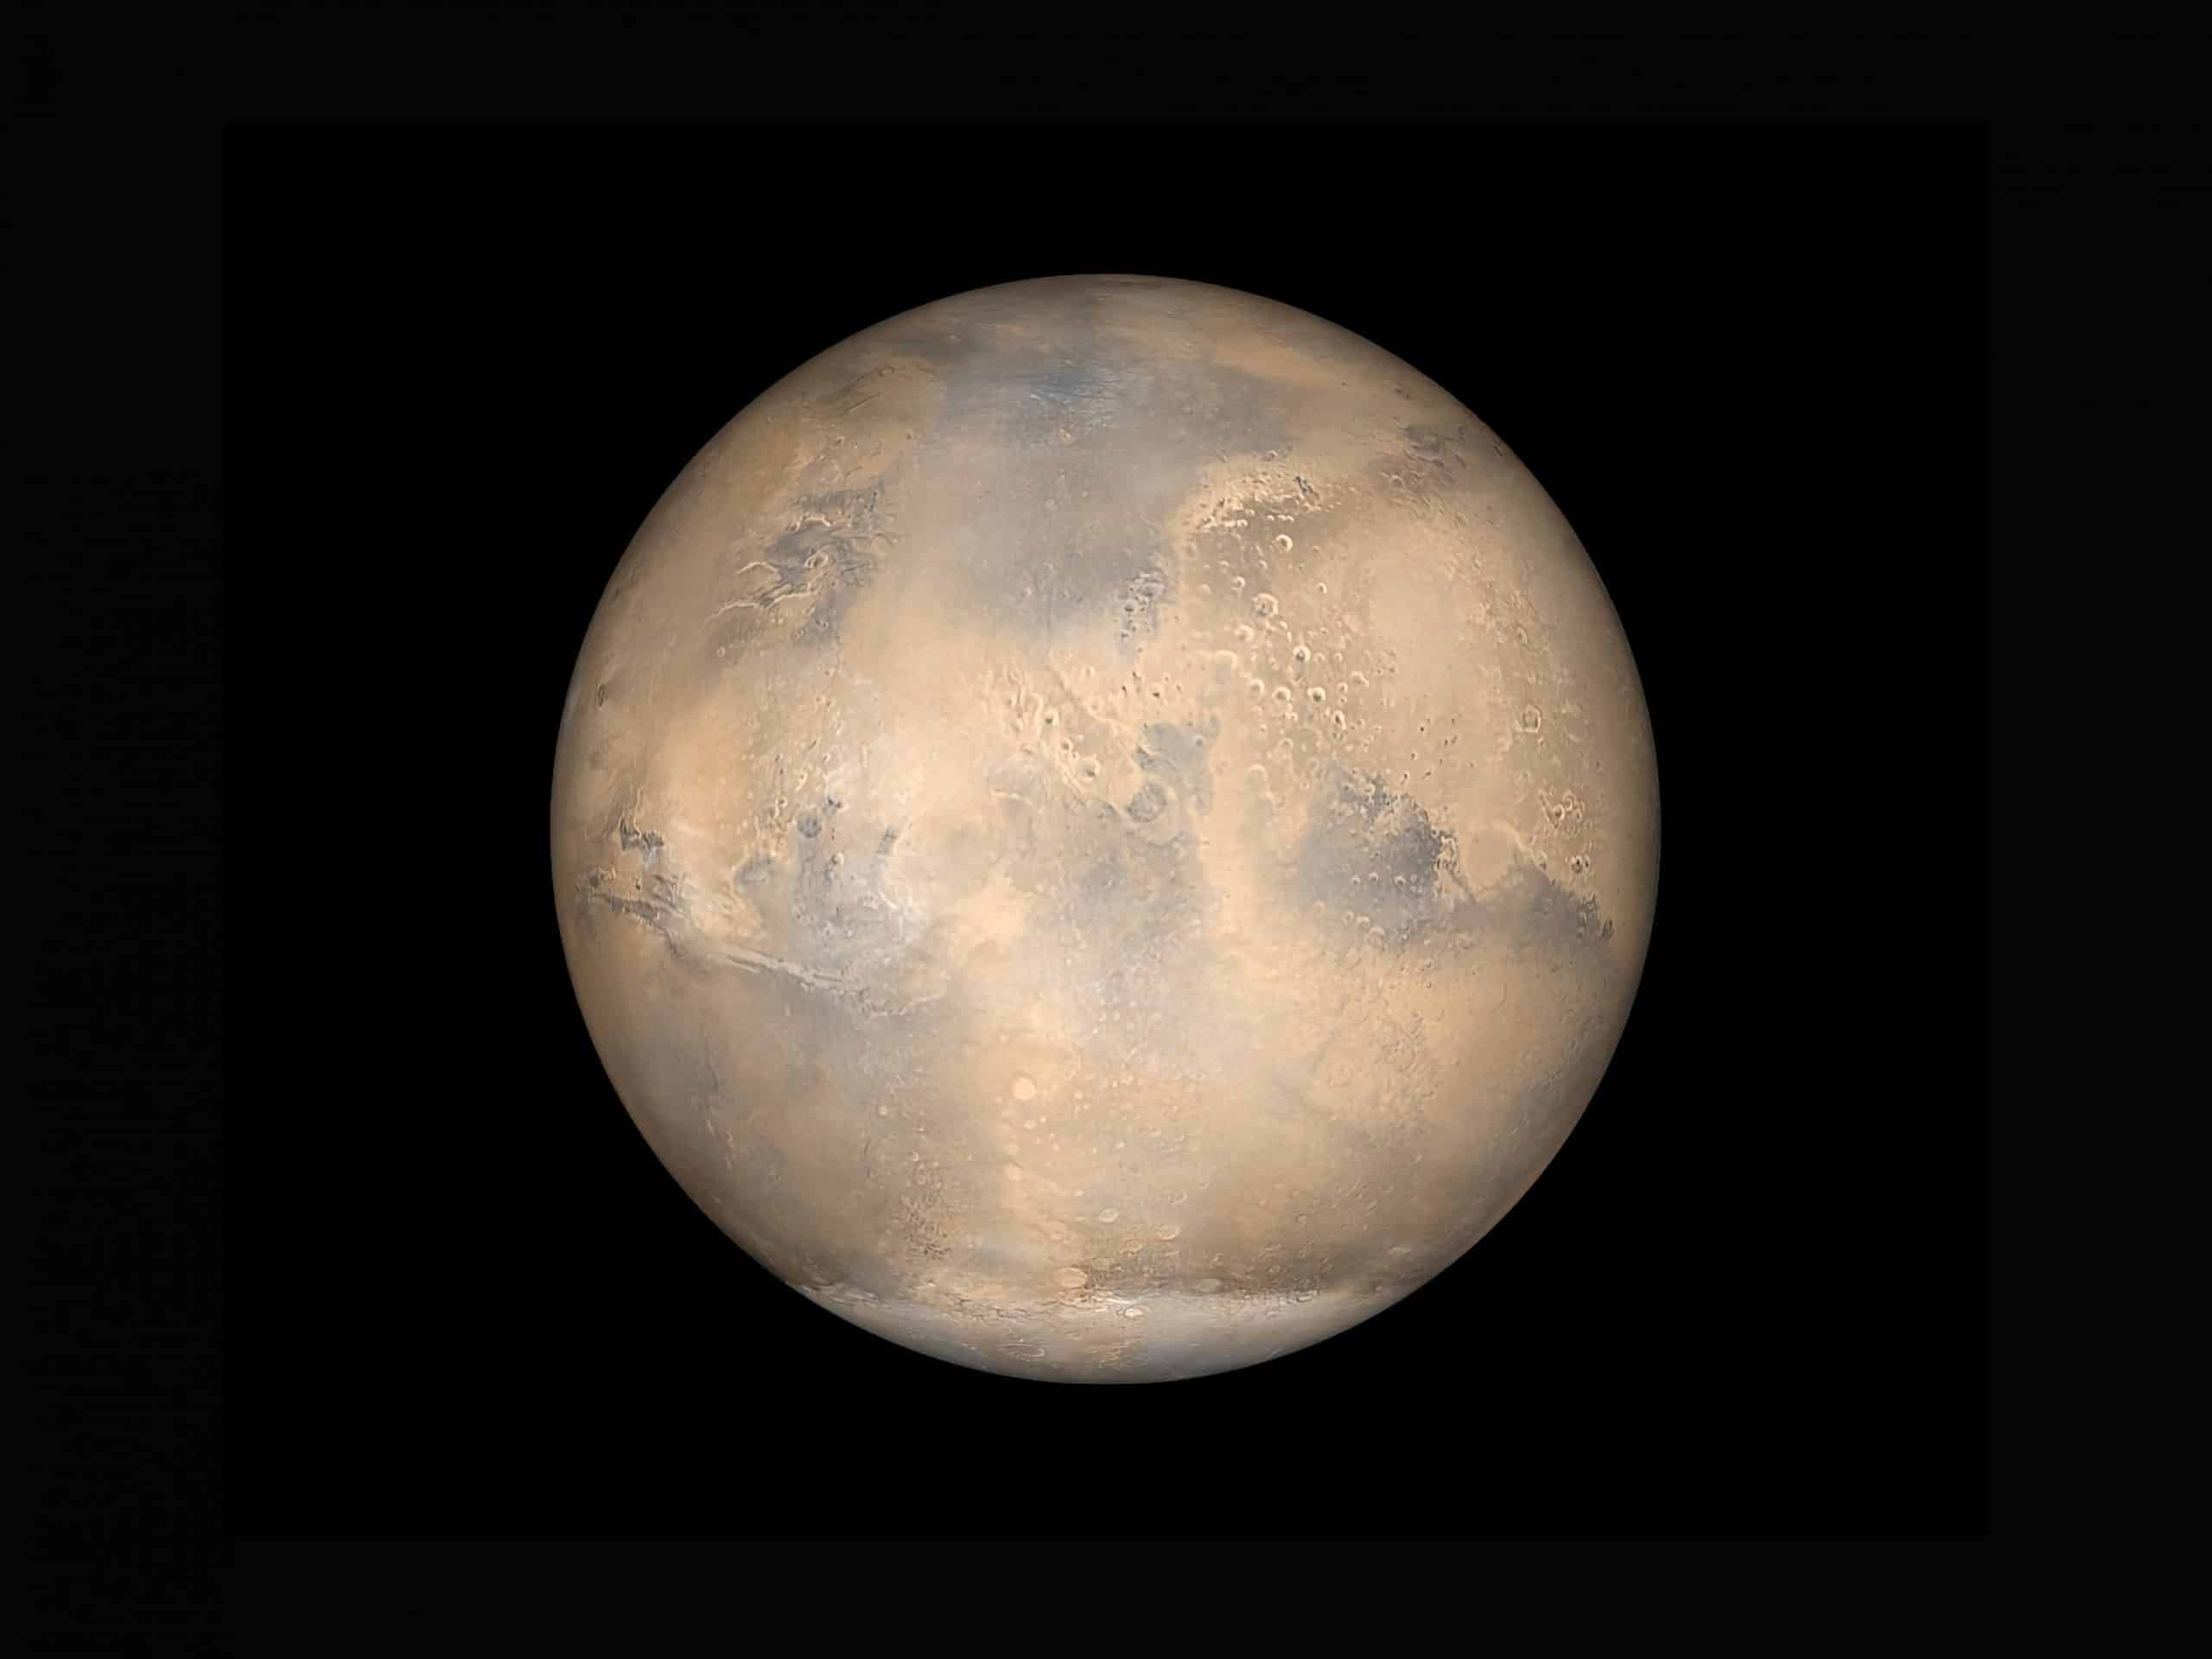 La planète Mars.